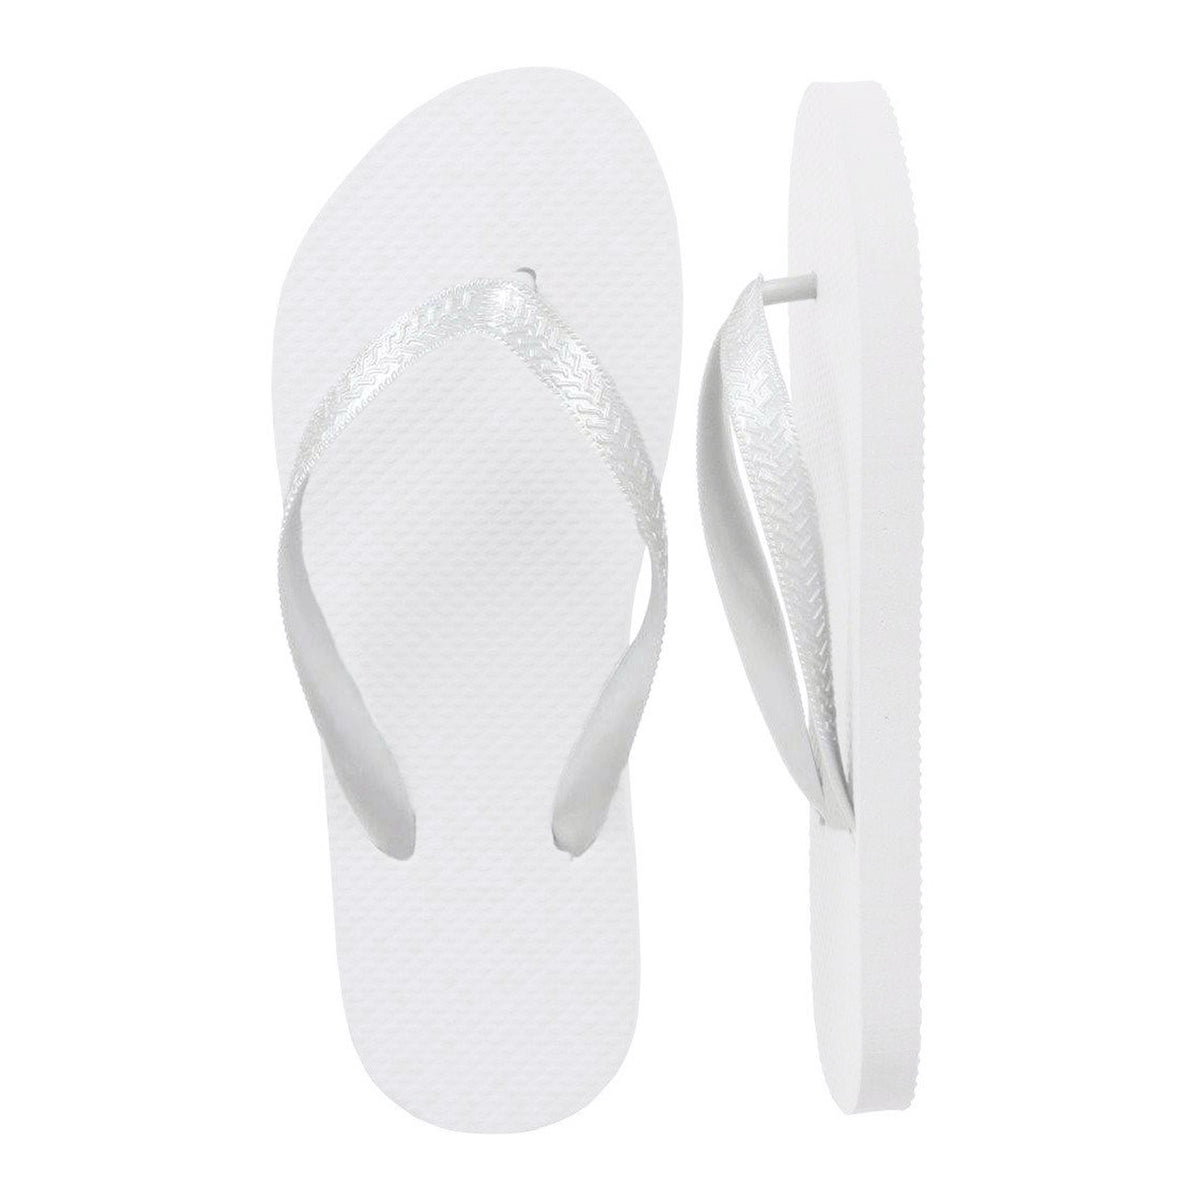 Bulk Flip Flops - 20 Pearly White Wedding Flip Flops